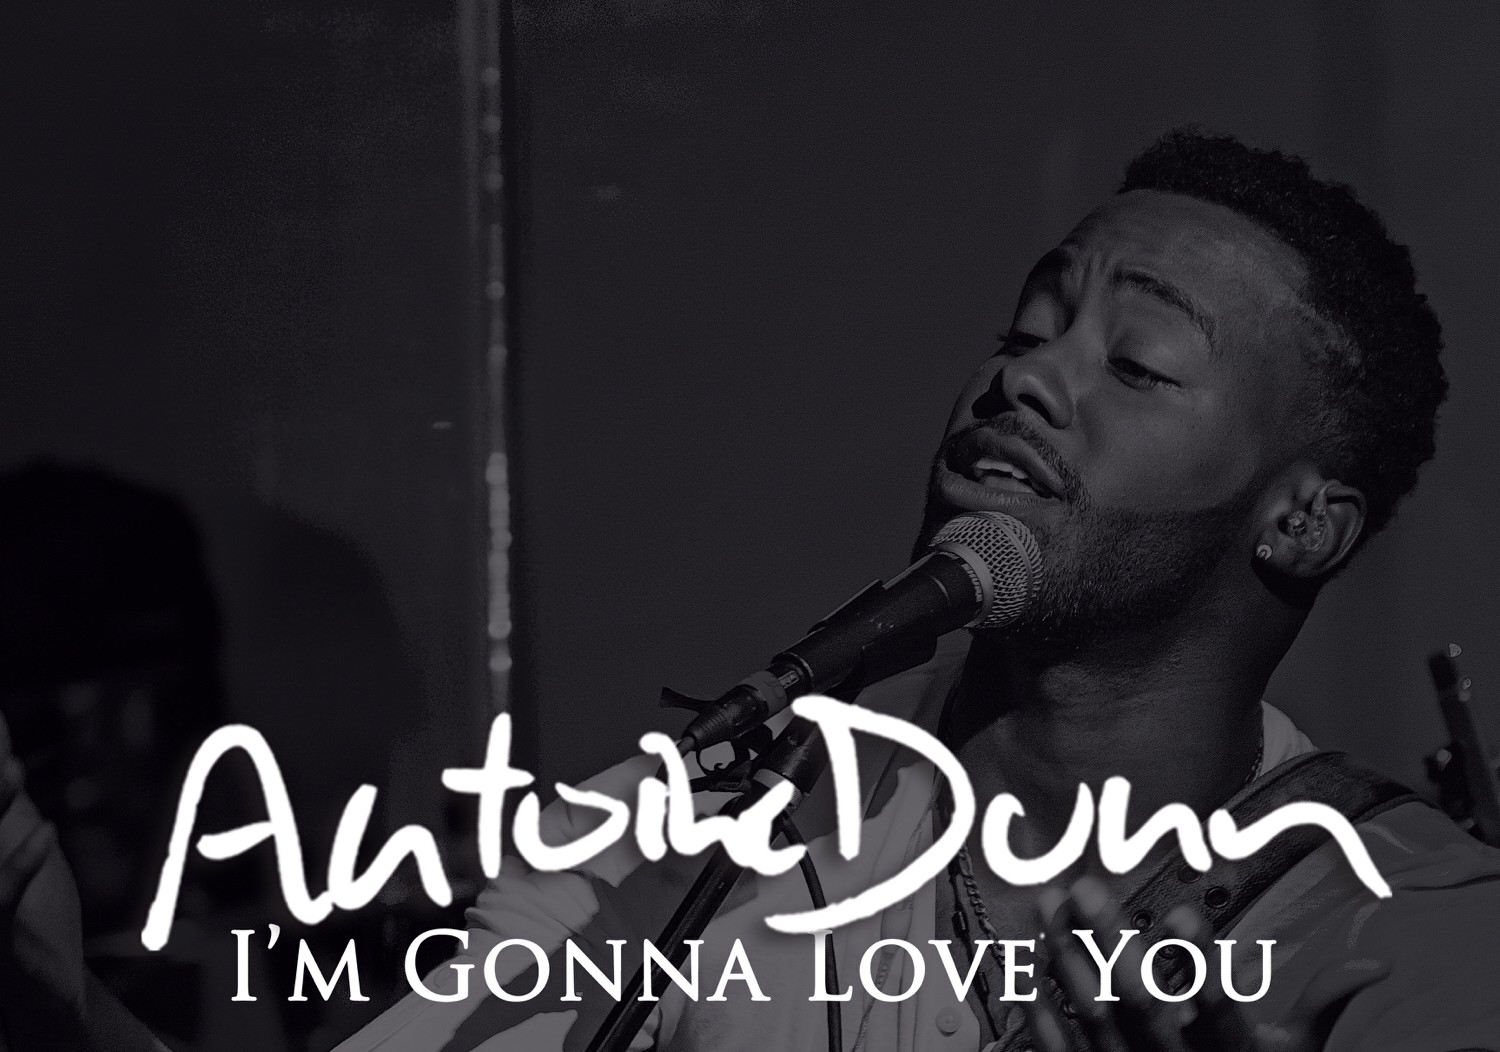 New Video: Antoine Dunn “I’m Gonna Love You”